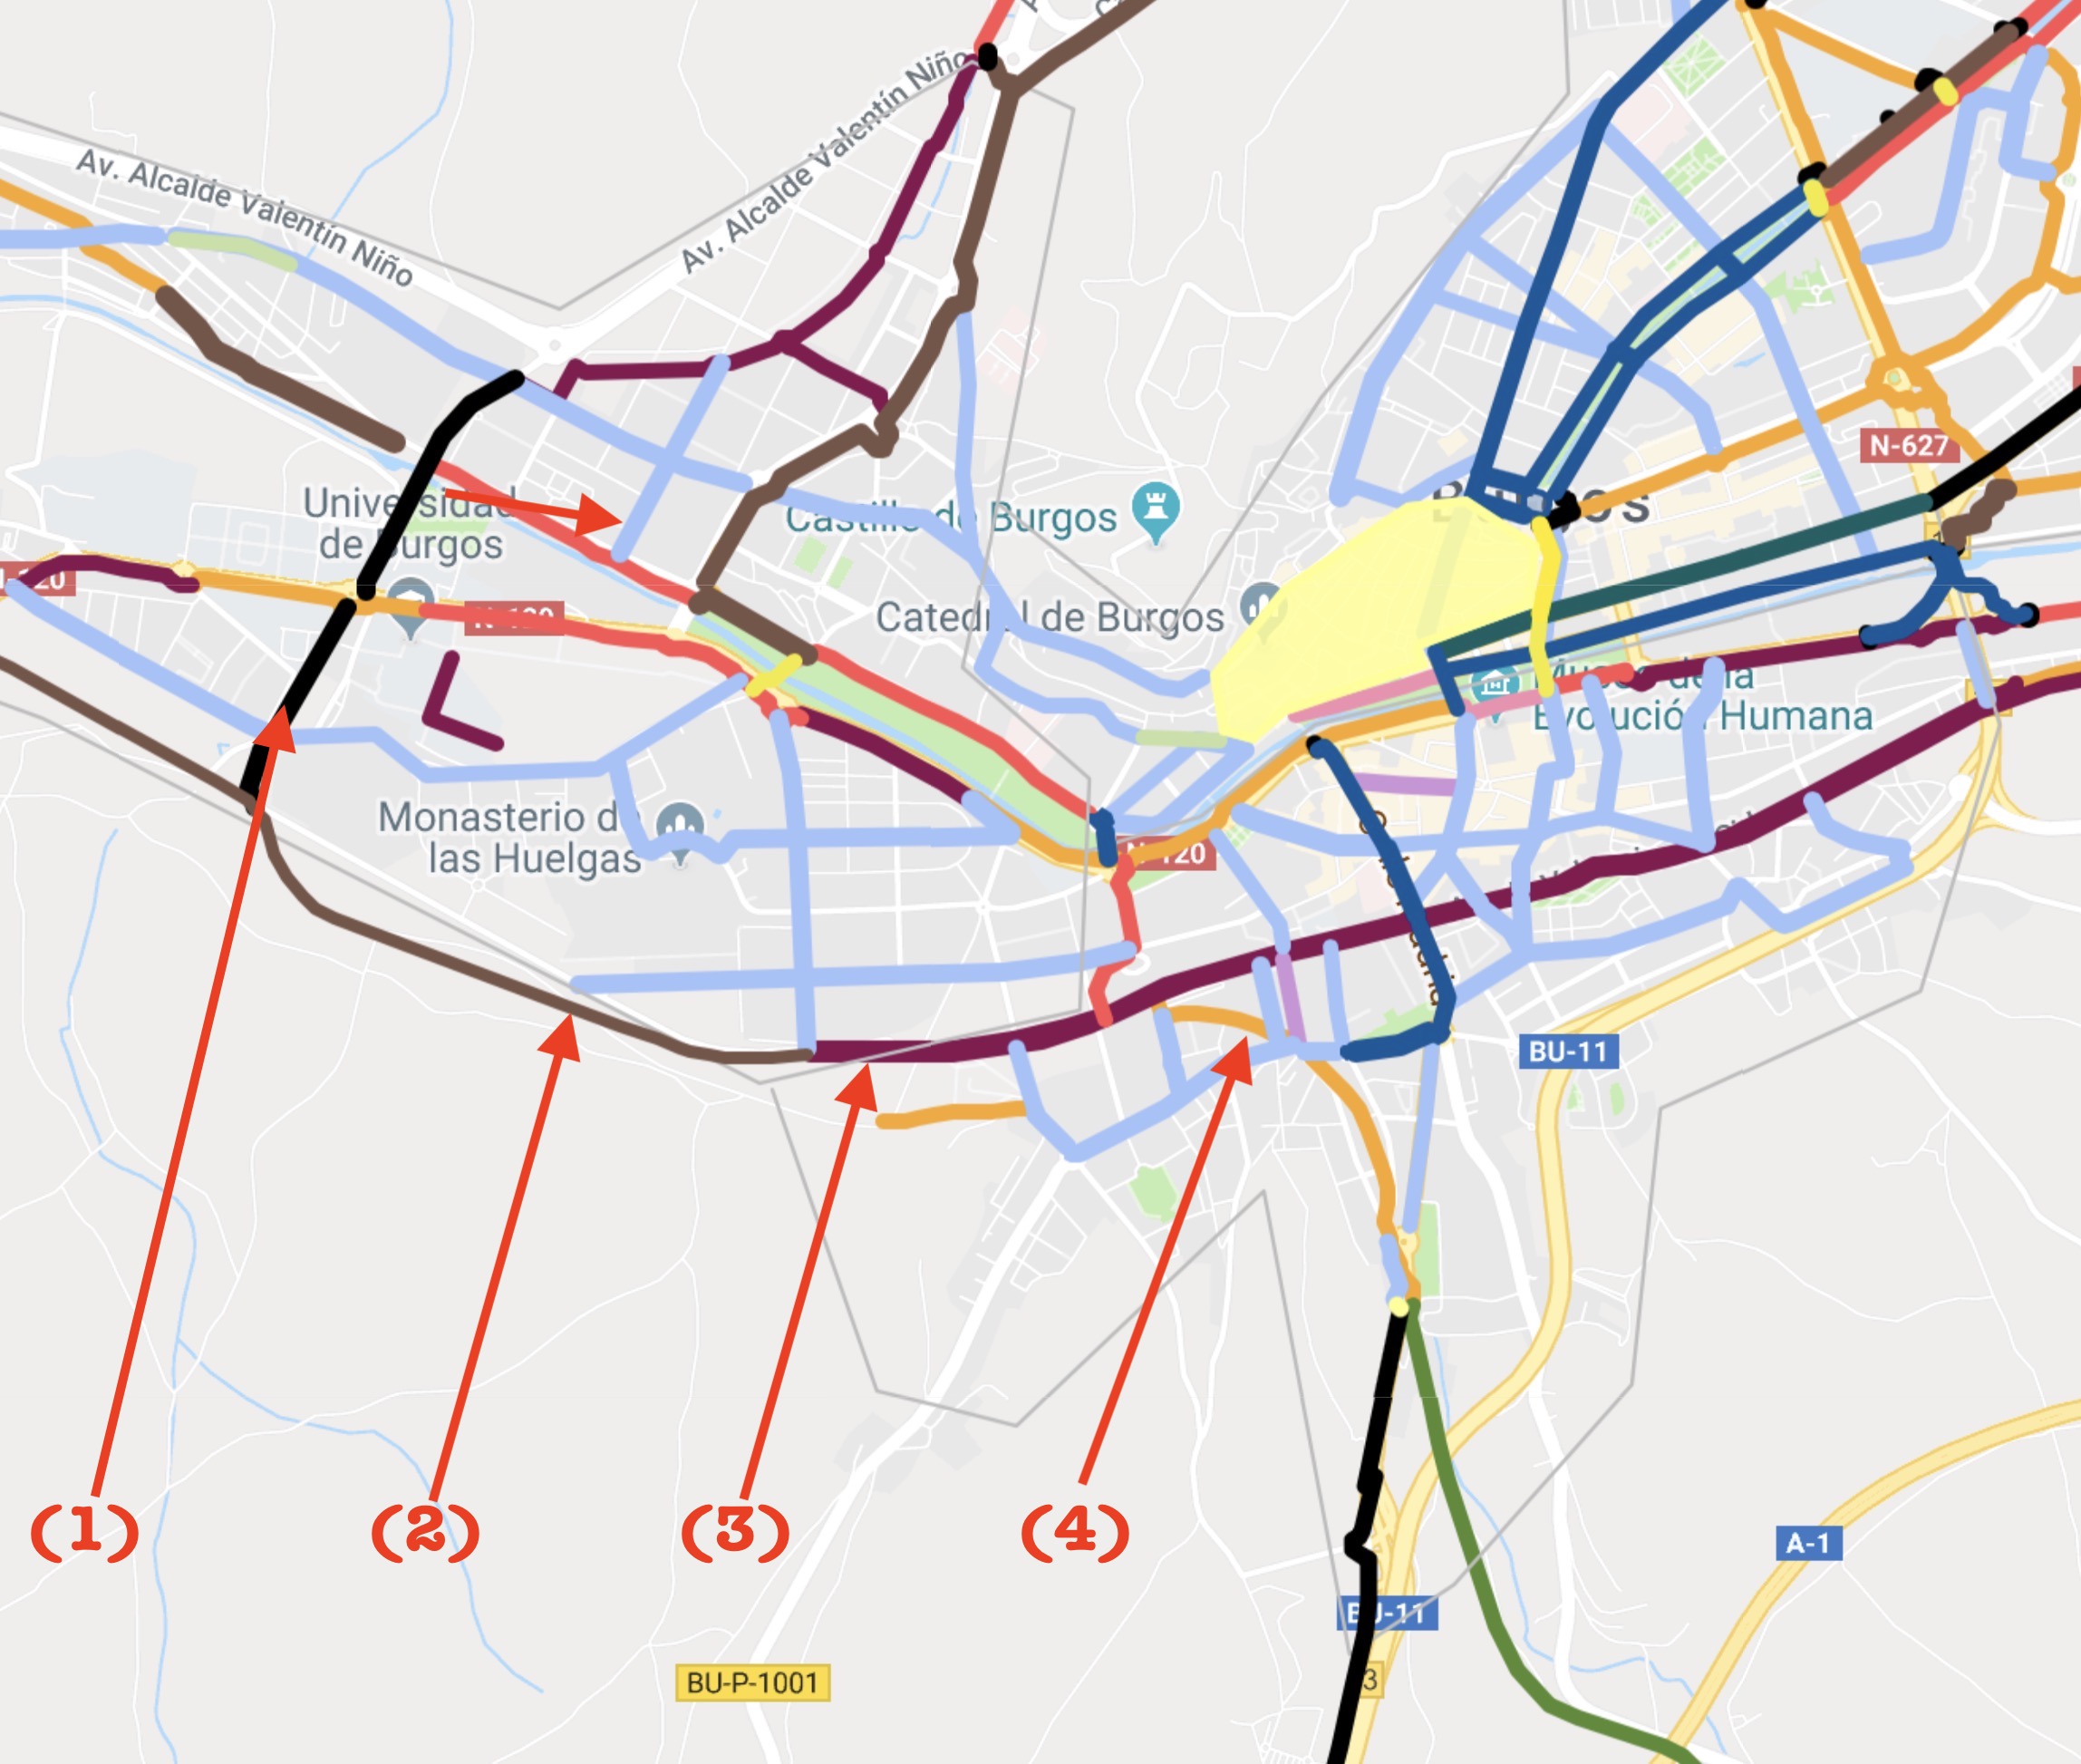 Mapa de vías ciclistas propuestas para burgos donde se marcan las que conectarían en la ciudad los dos tramos de la vía verde Santander Mediterráneo